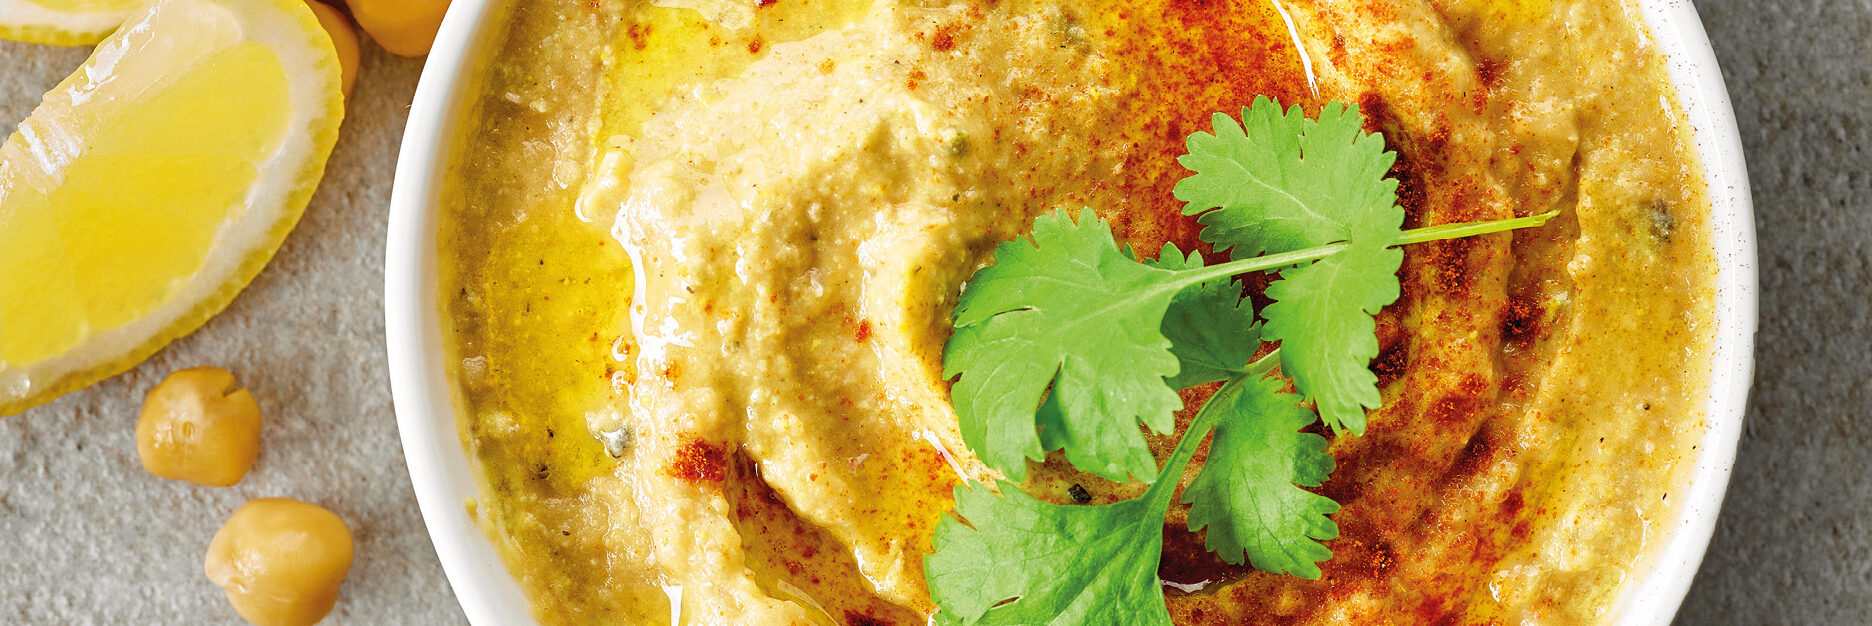 Unser Rezeptvorschlag: Kichererbsen-Möhren Hummus